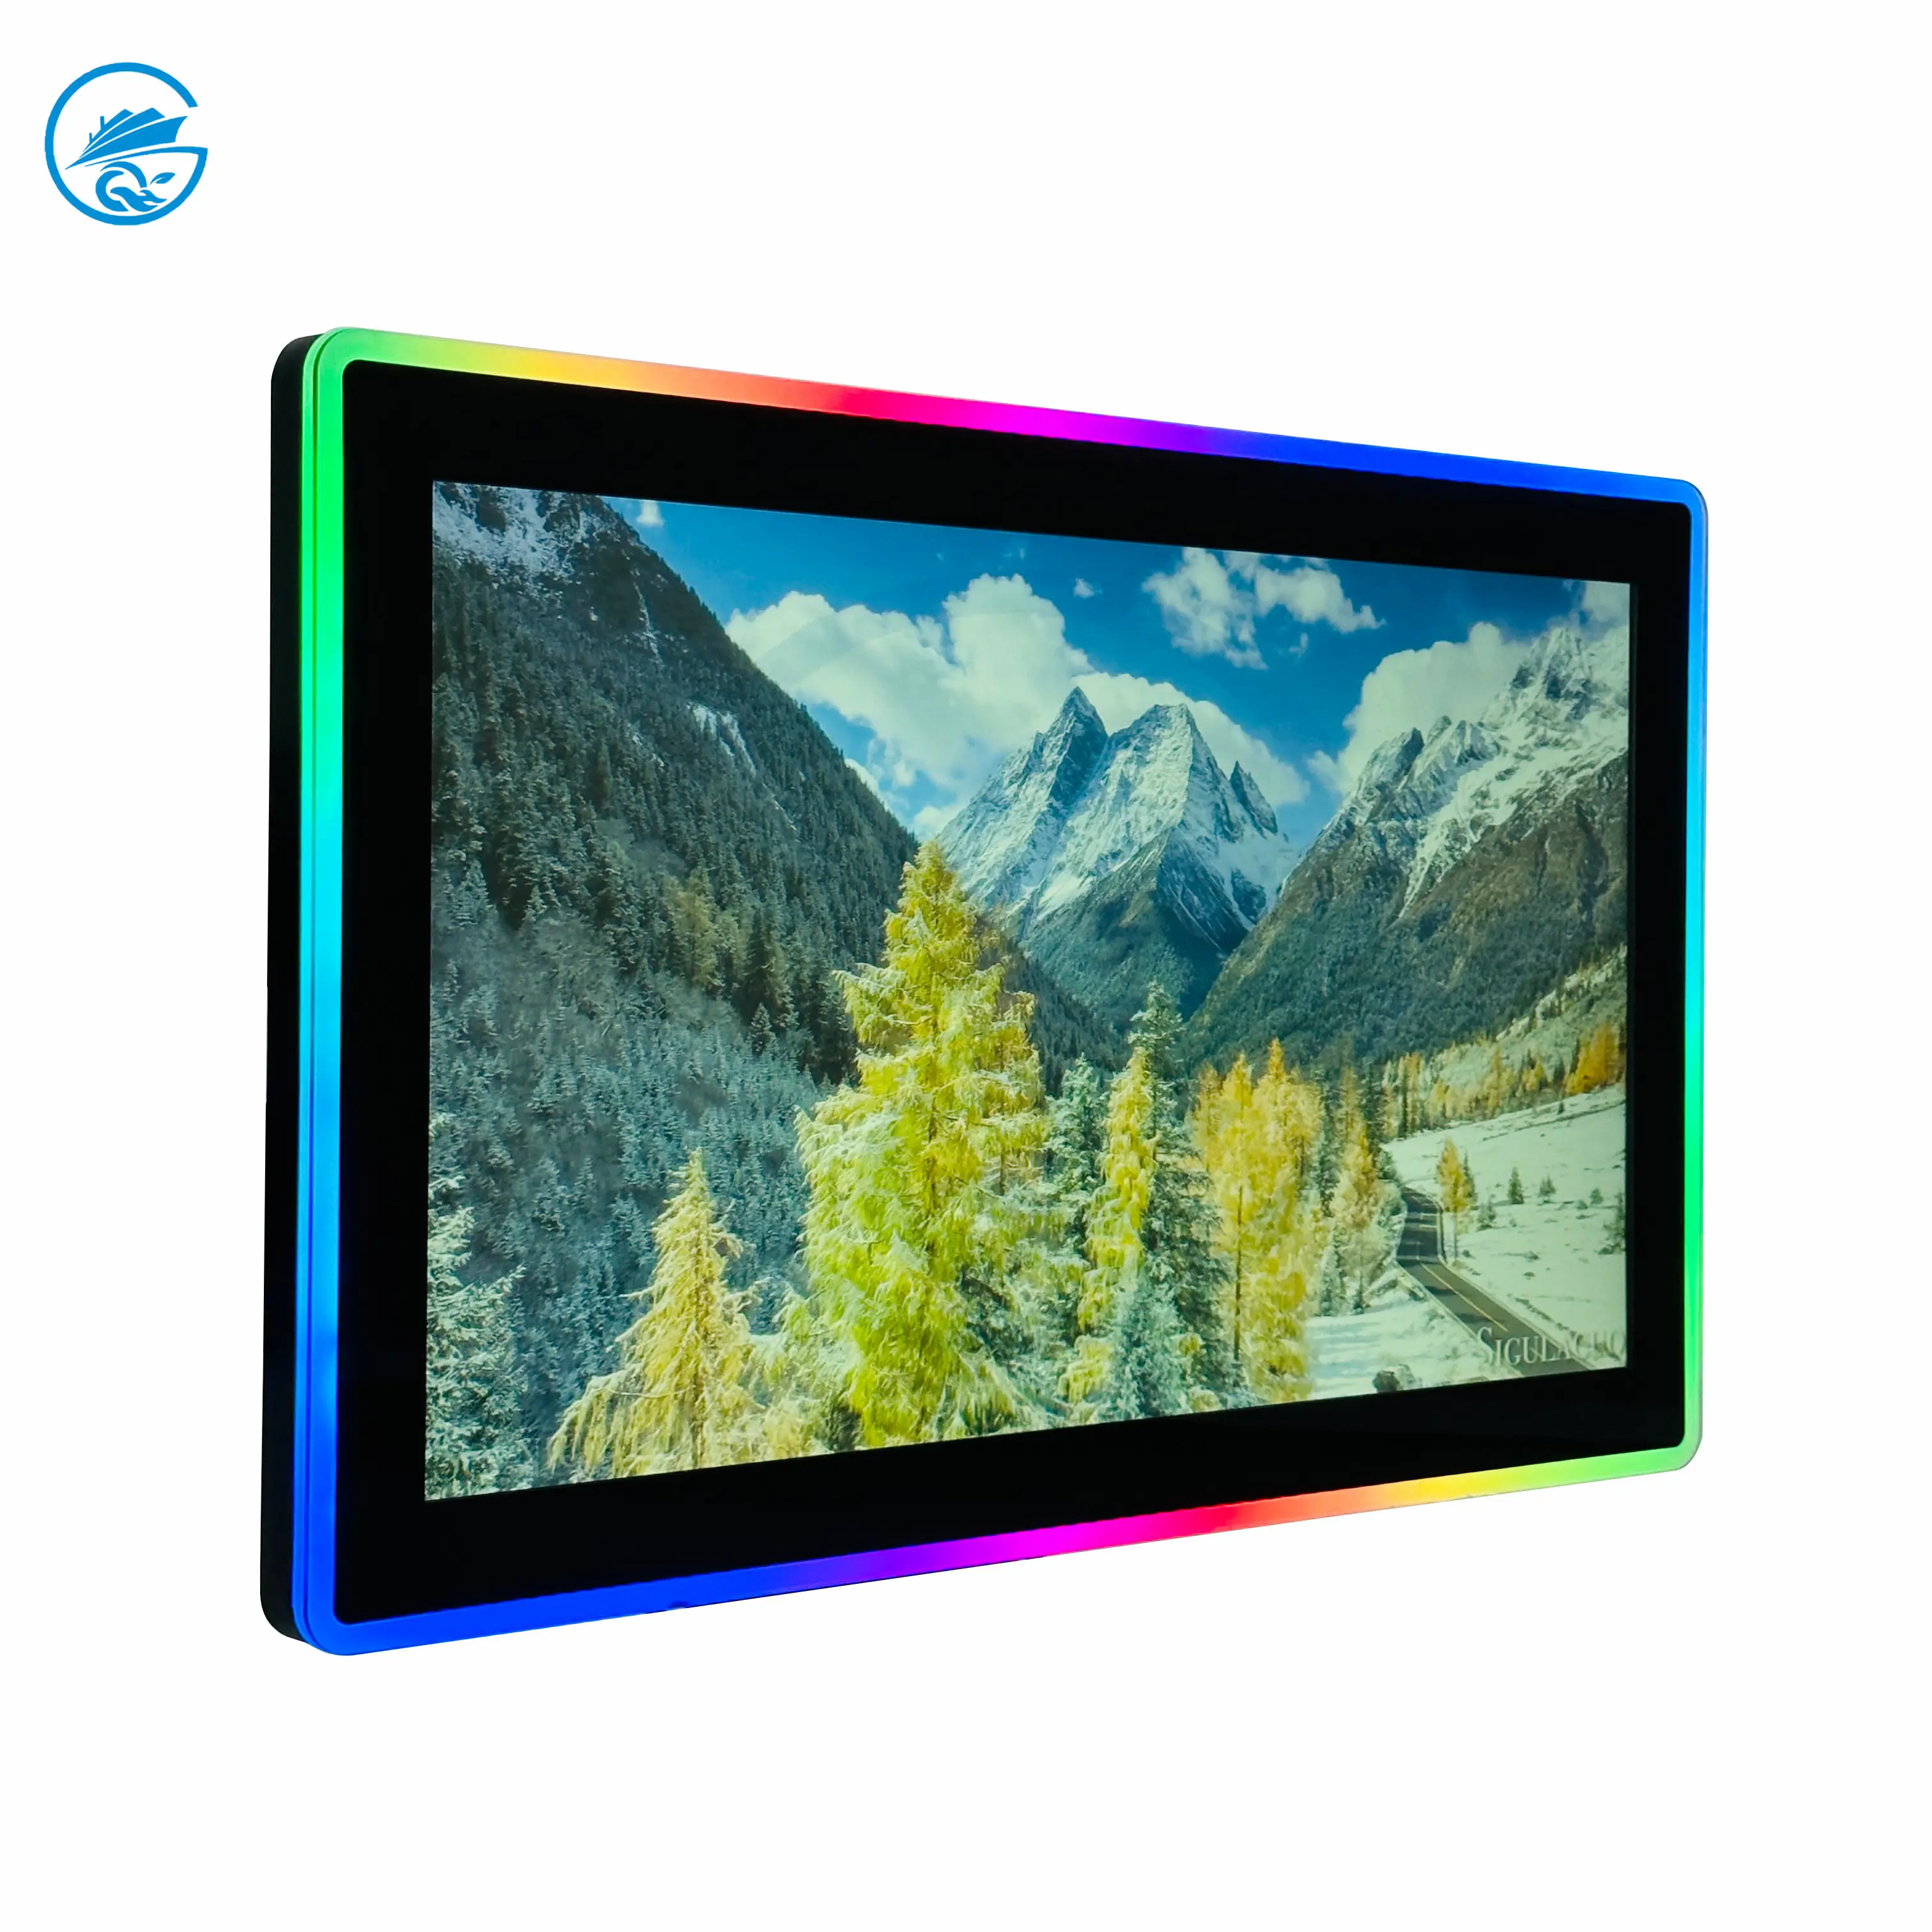 Monitor de pantalla táctil enrollable vertical con panel de cristal de luz LED capacitivo de 22 pulgadas